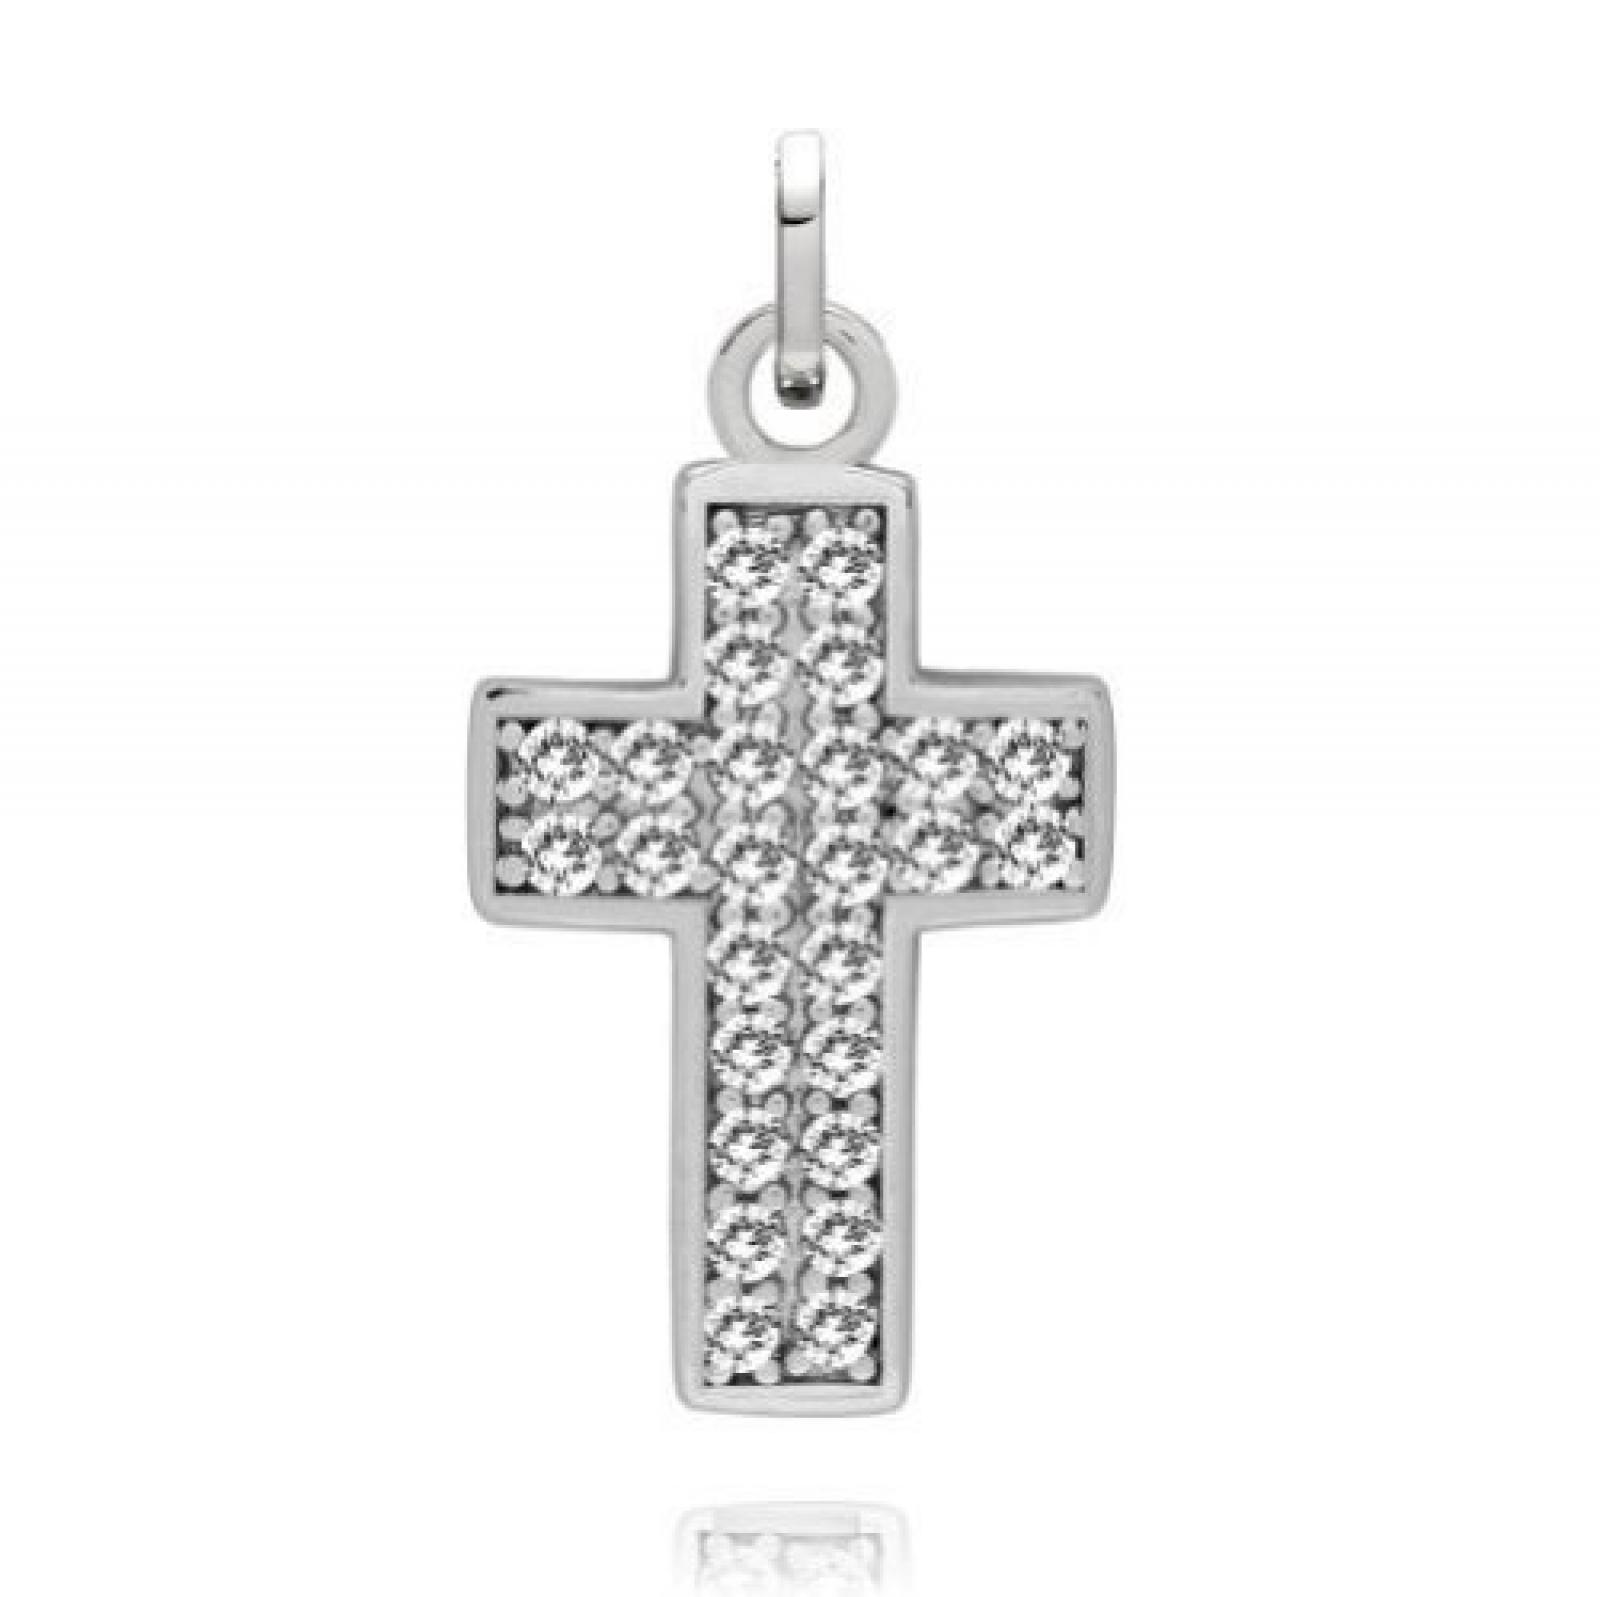 Rafaela Donata Damen-Anhänger Classic Collection Kreuz Zirkonia weiß 925 Sterling Silber 60837063 